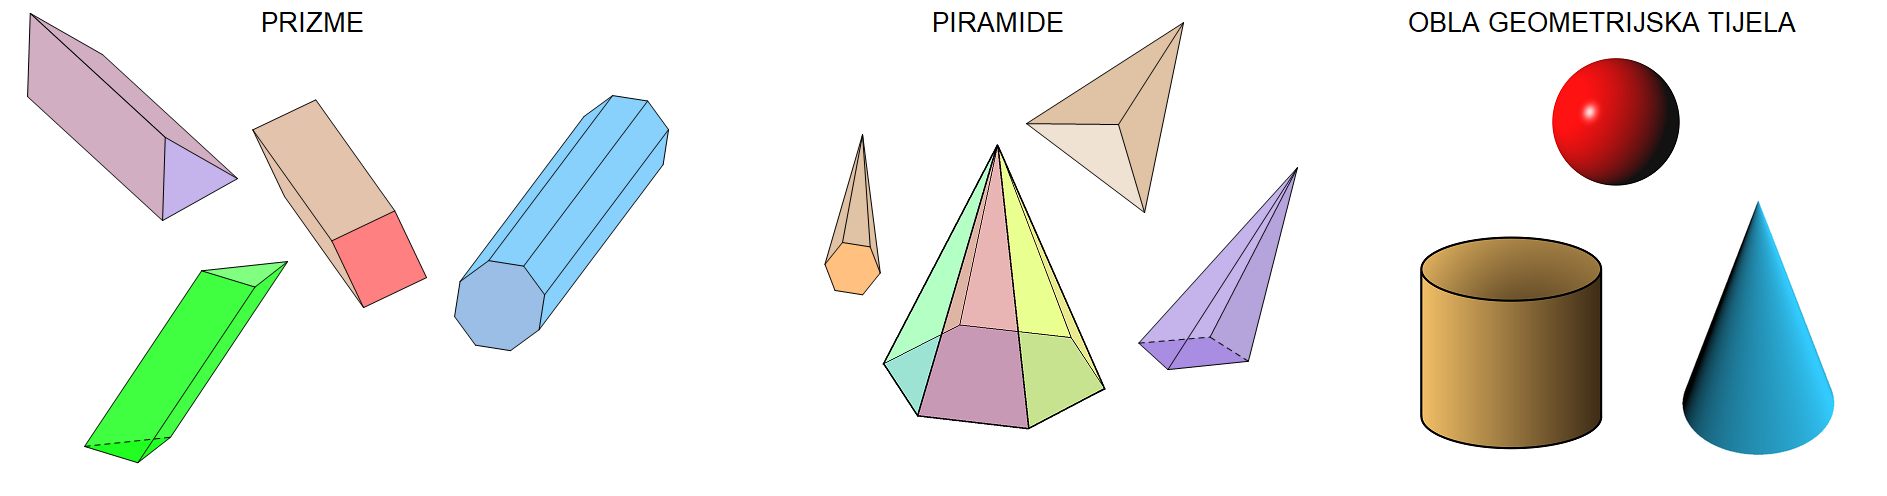 Slika prikazuje primjere tri skupine tijela -prizme, piramide i obla tijela.